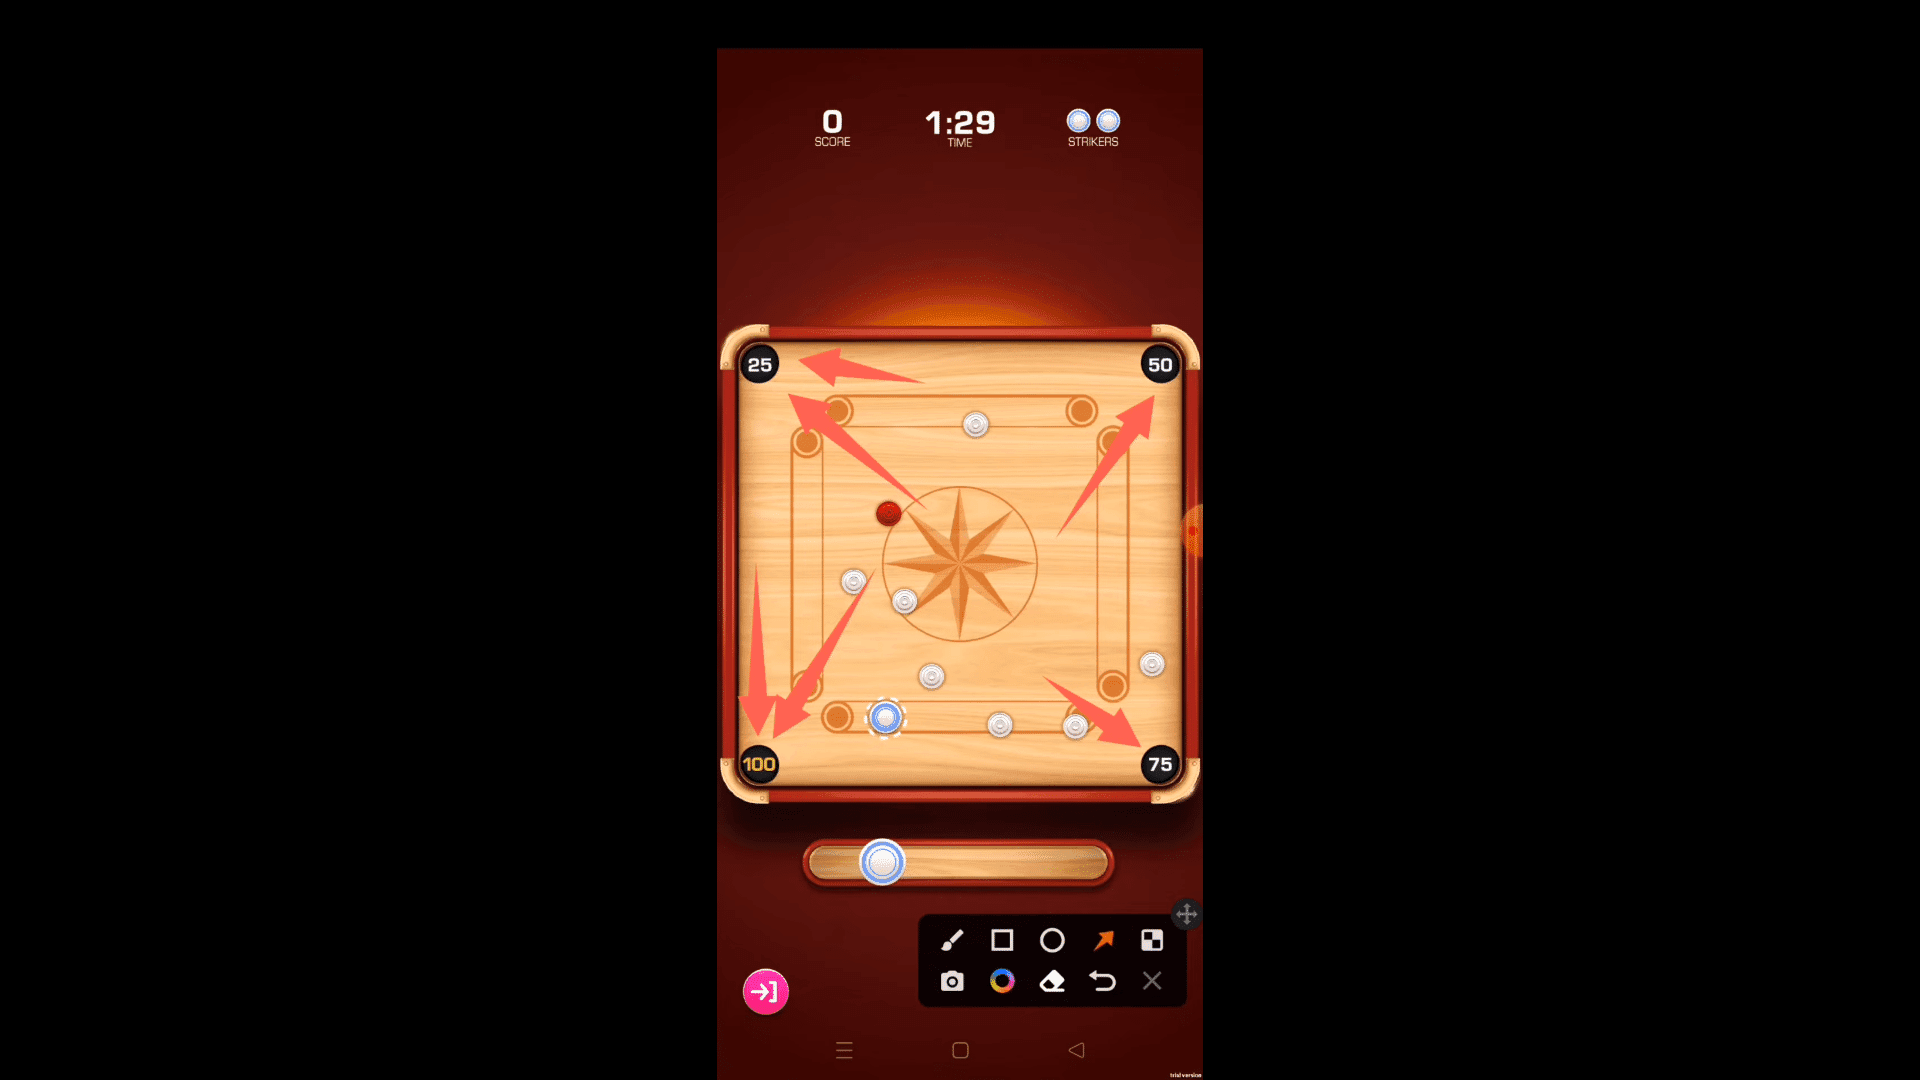 Carrom Blitz revitaliza la jugabilidad de Carrom en un juego gratuito para Android de Joyride Games, inyectando nueva emoción a la experiencia clásica.